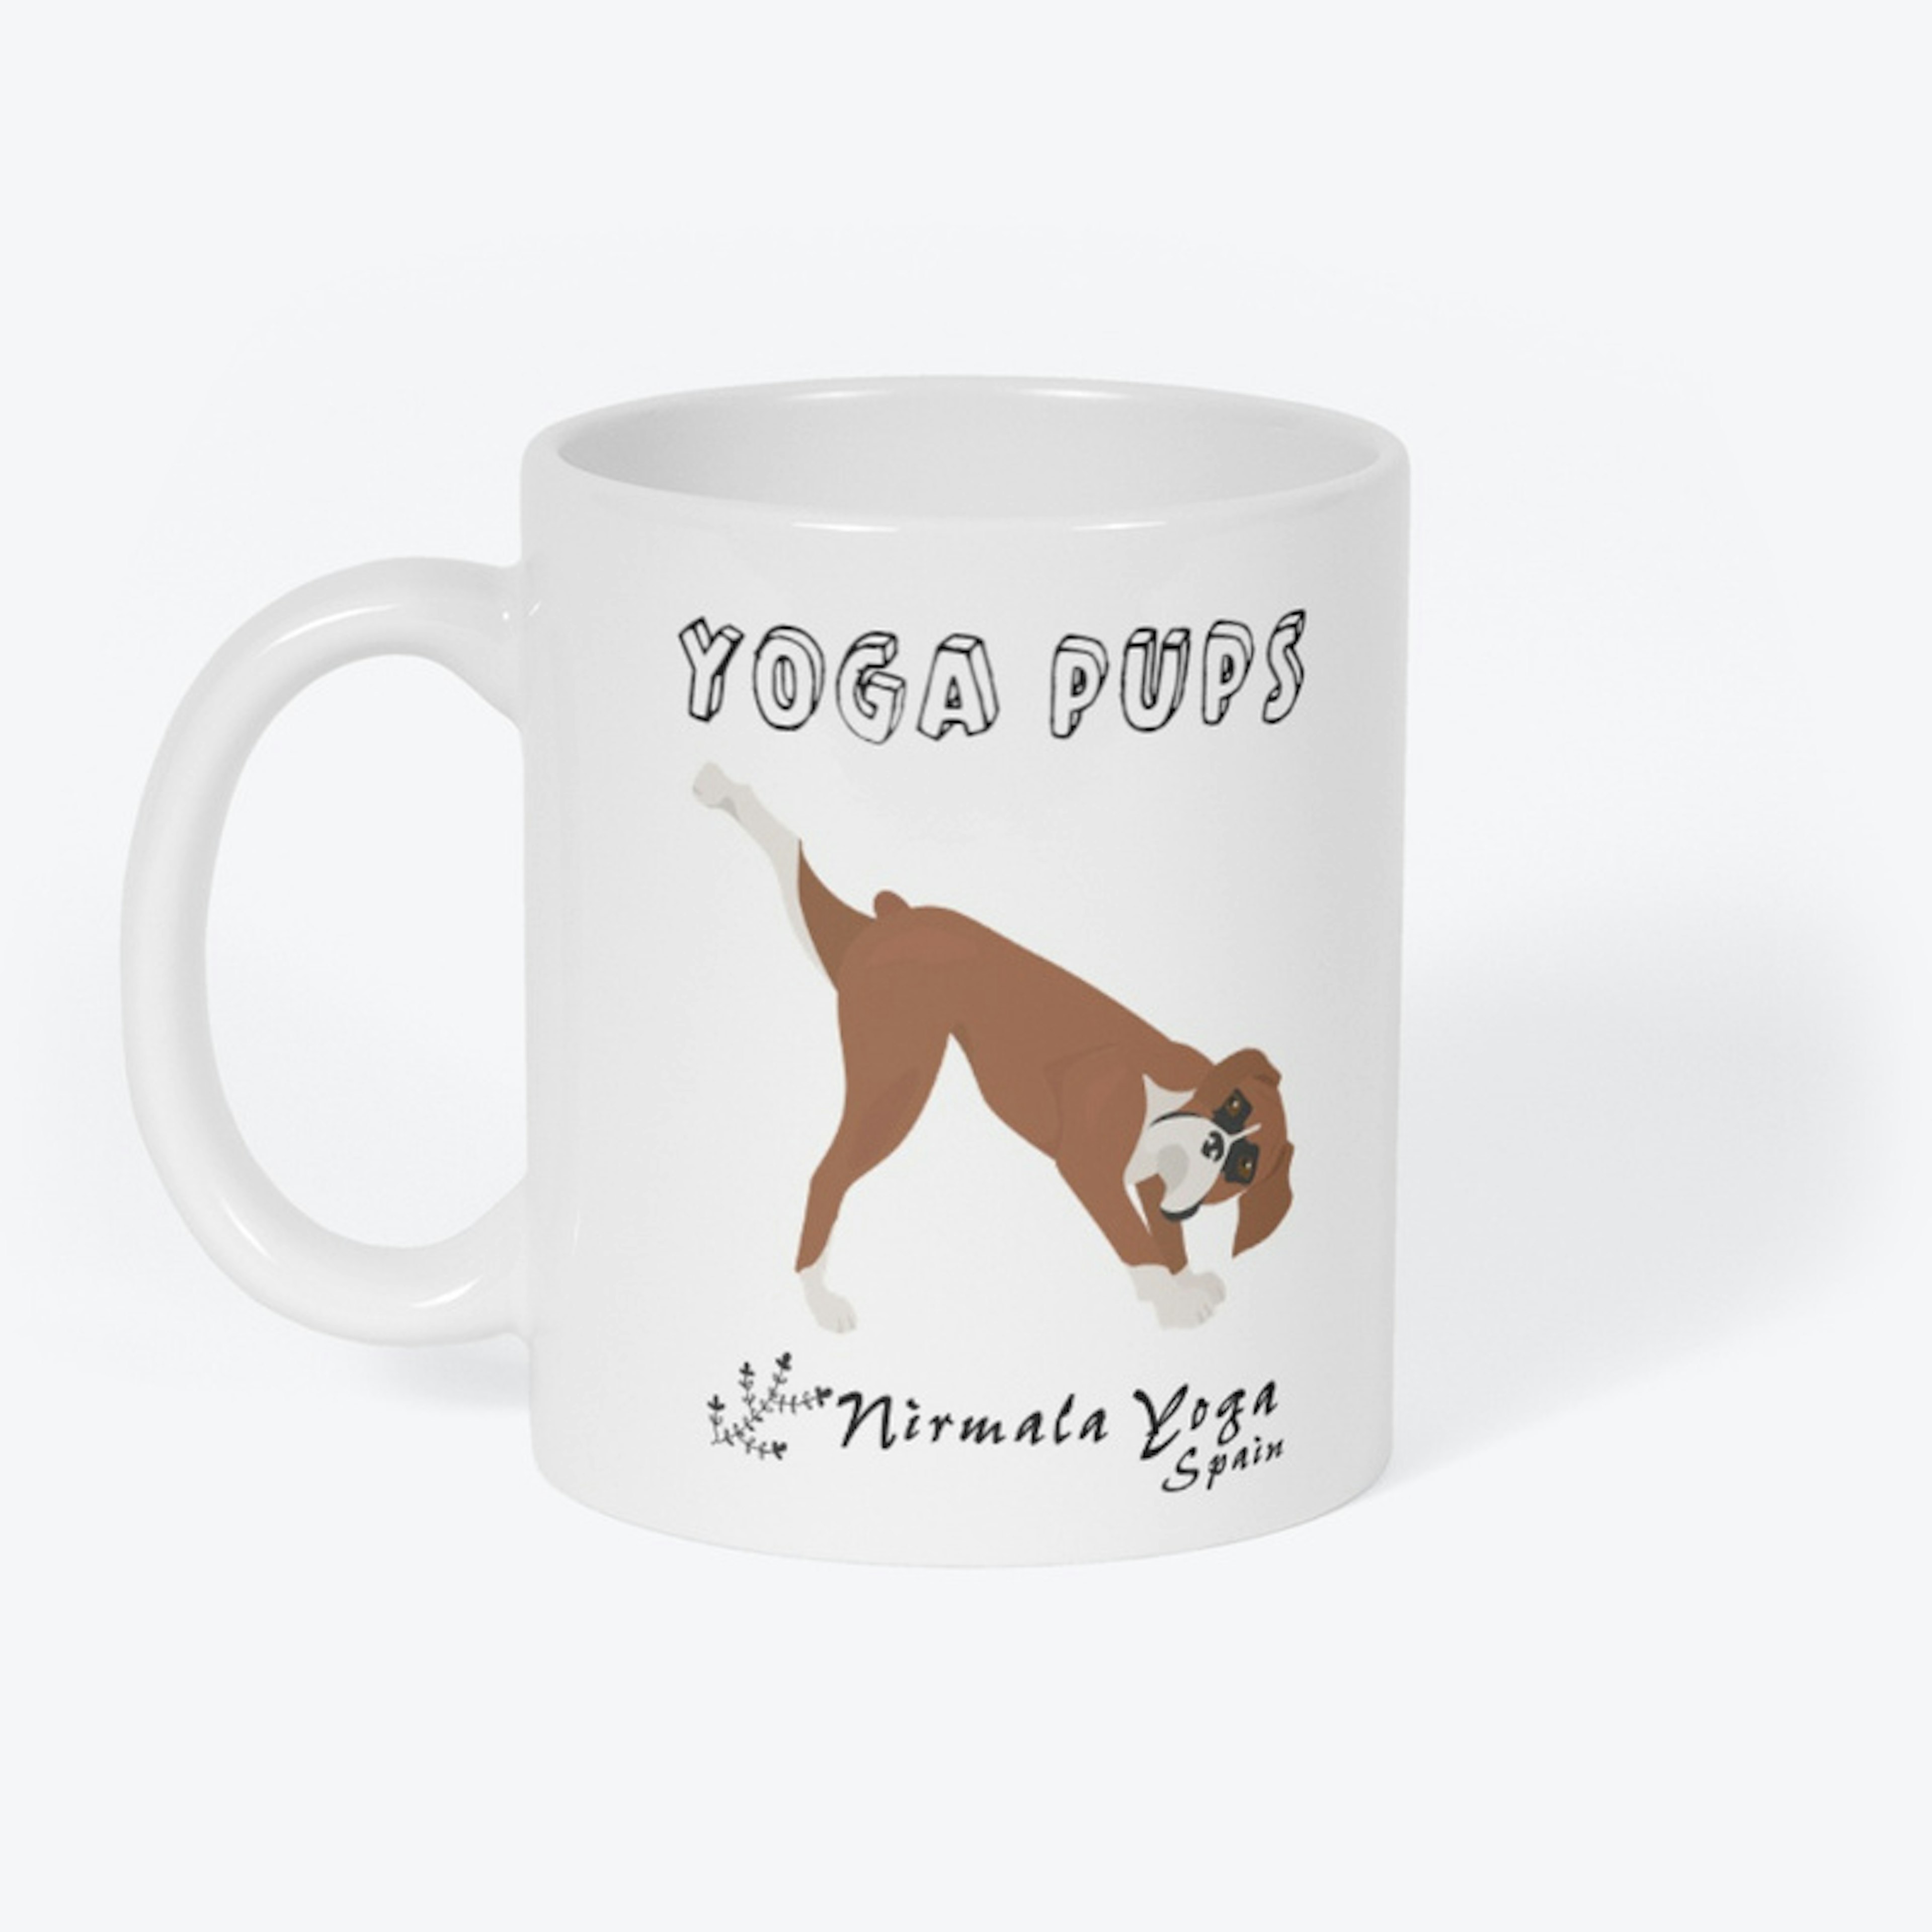 Boxer "Yoga Pups" Mug